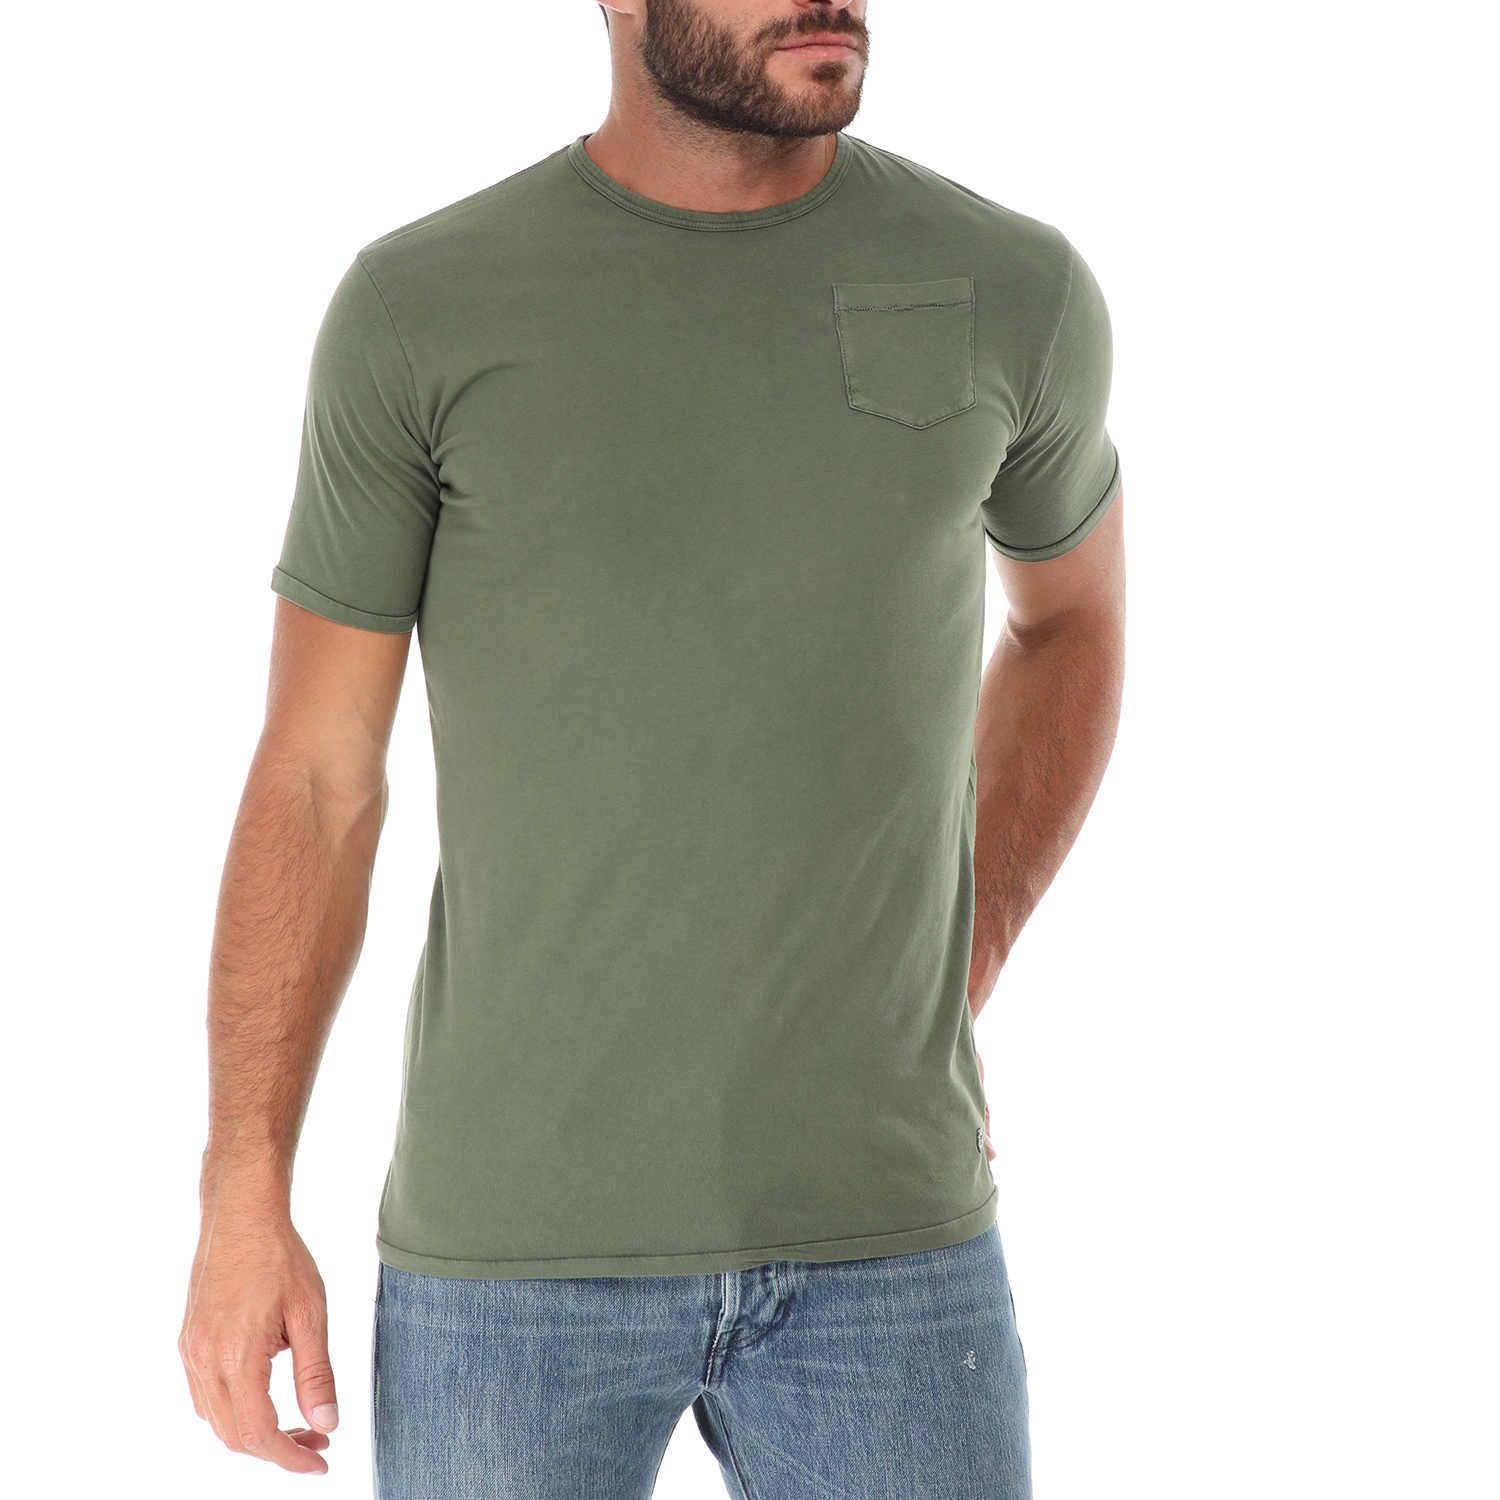 Ανδρικά/Ρούχα/Μπλούζες/Κοντομάνικες GREENWOOD - Ανδρικό t-shirt GREENWOOD χακί